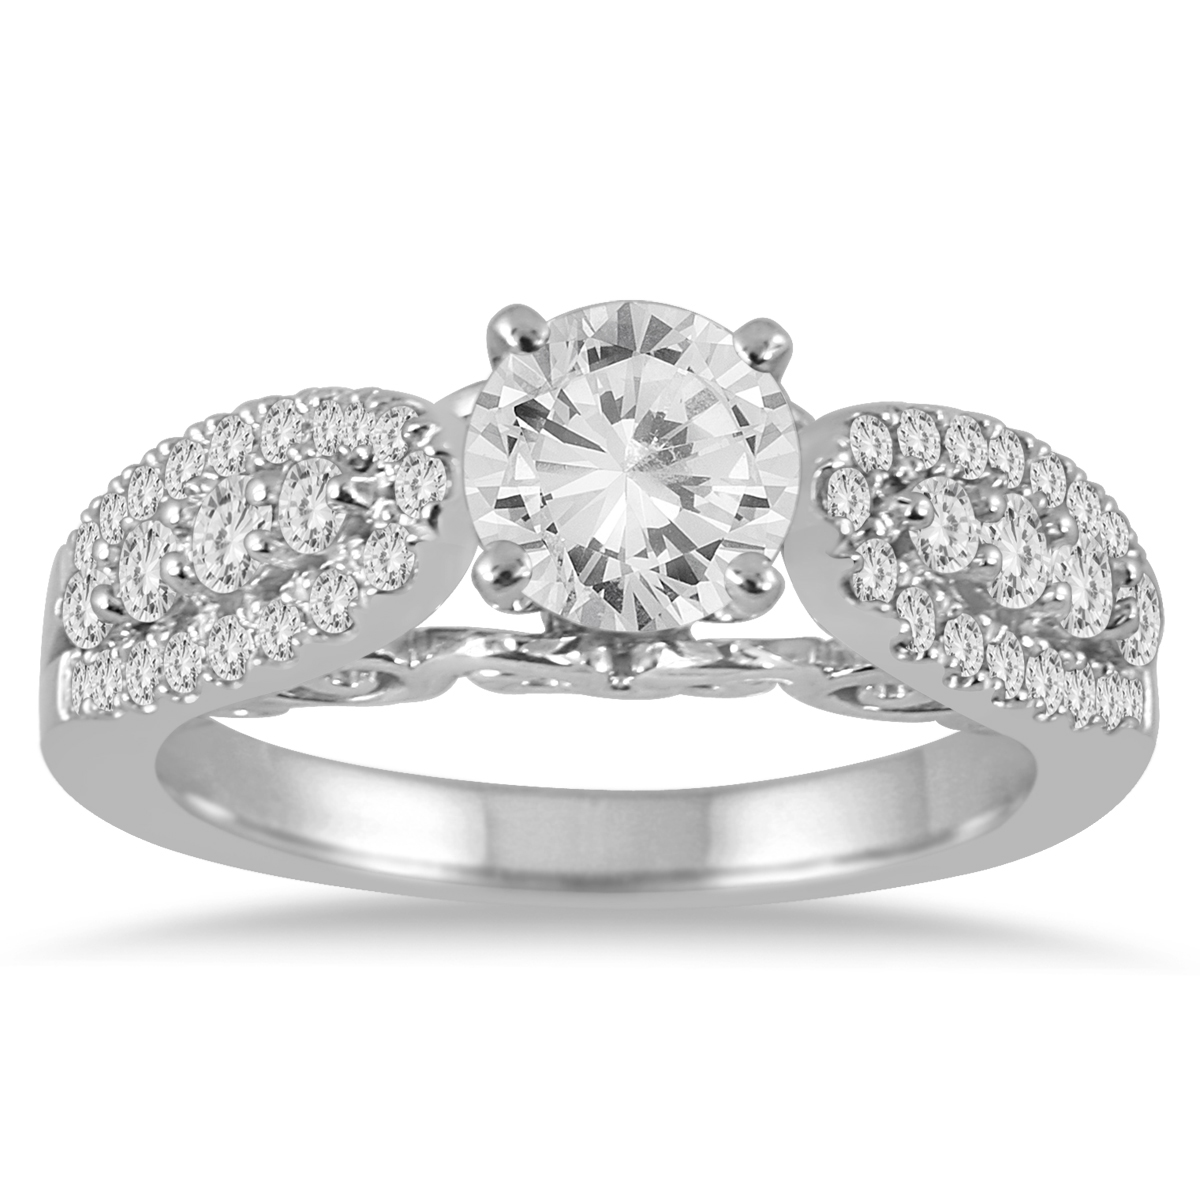 1 1/2 Carat Diamond Engagement Ring in 14K White Gold